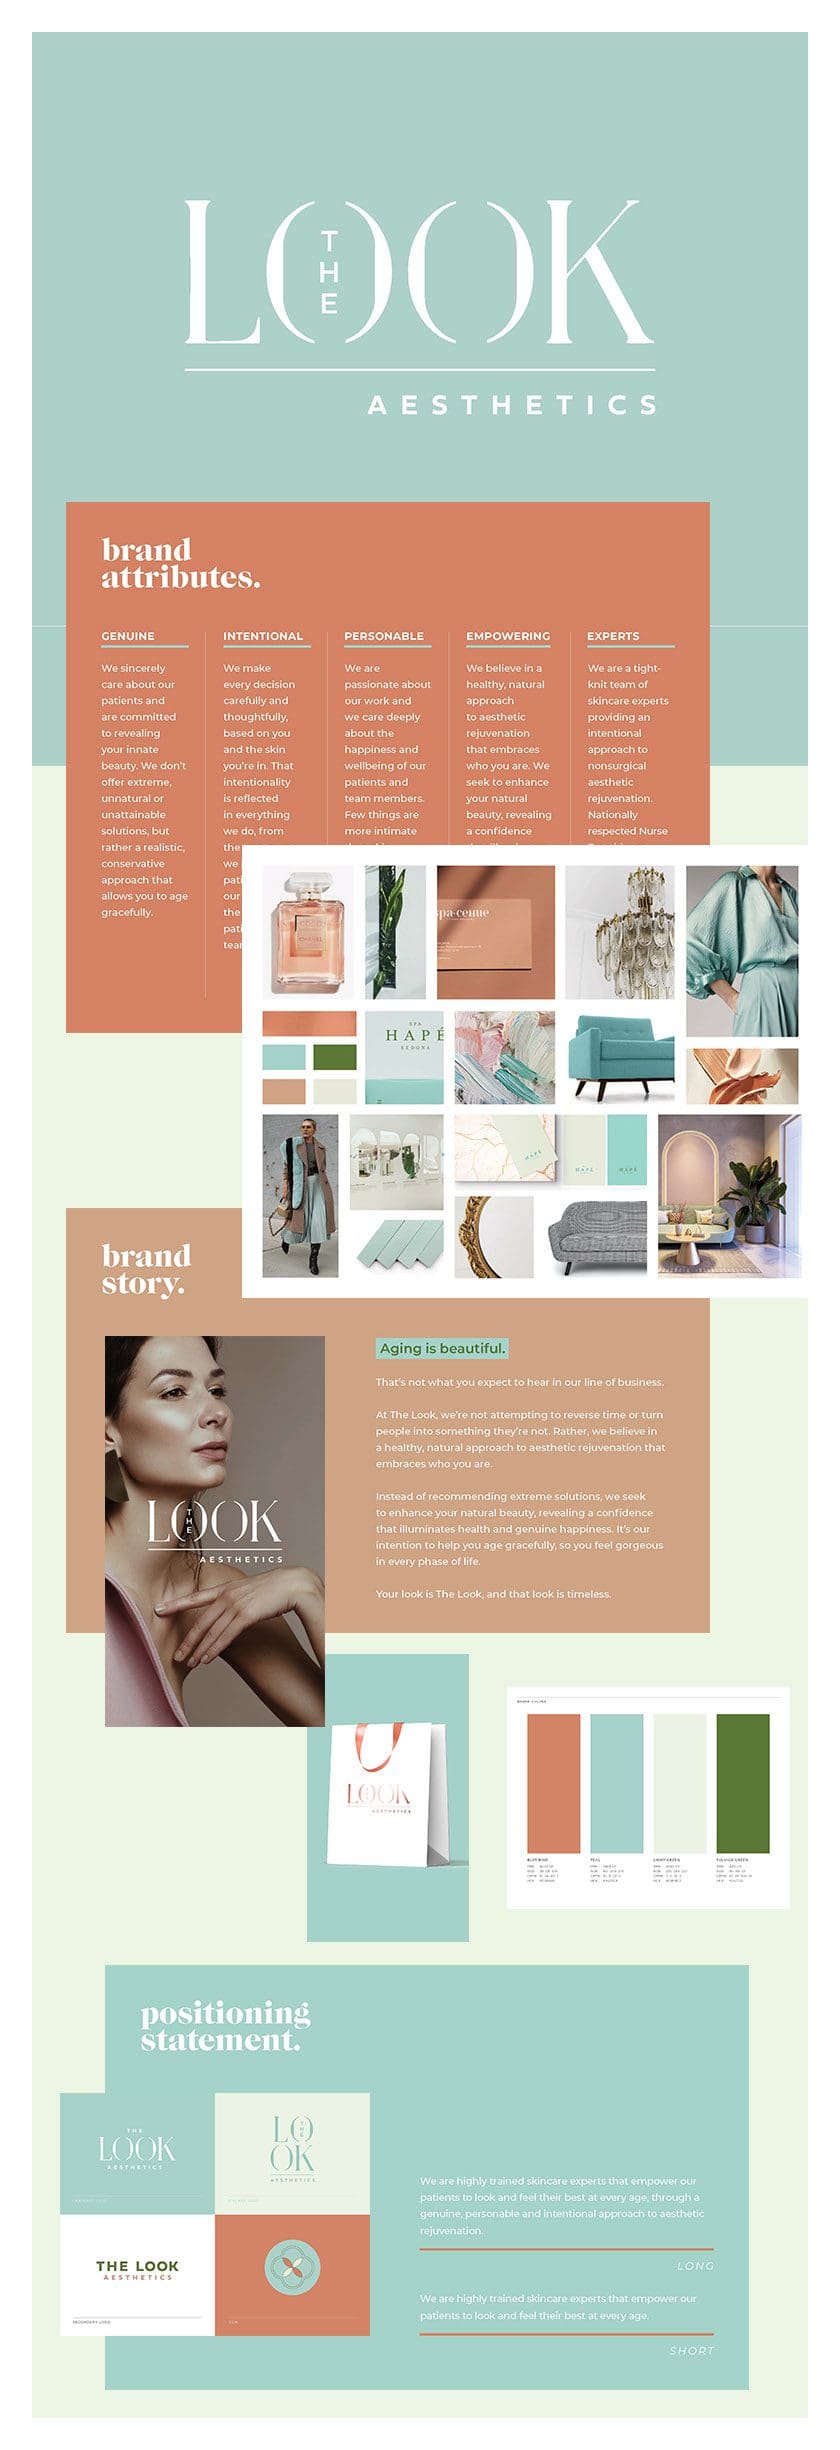 The LOOK - Business Branding Website Design